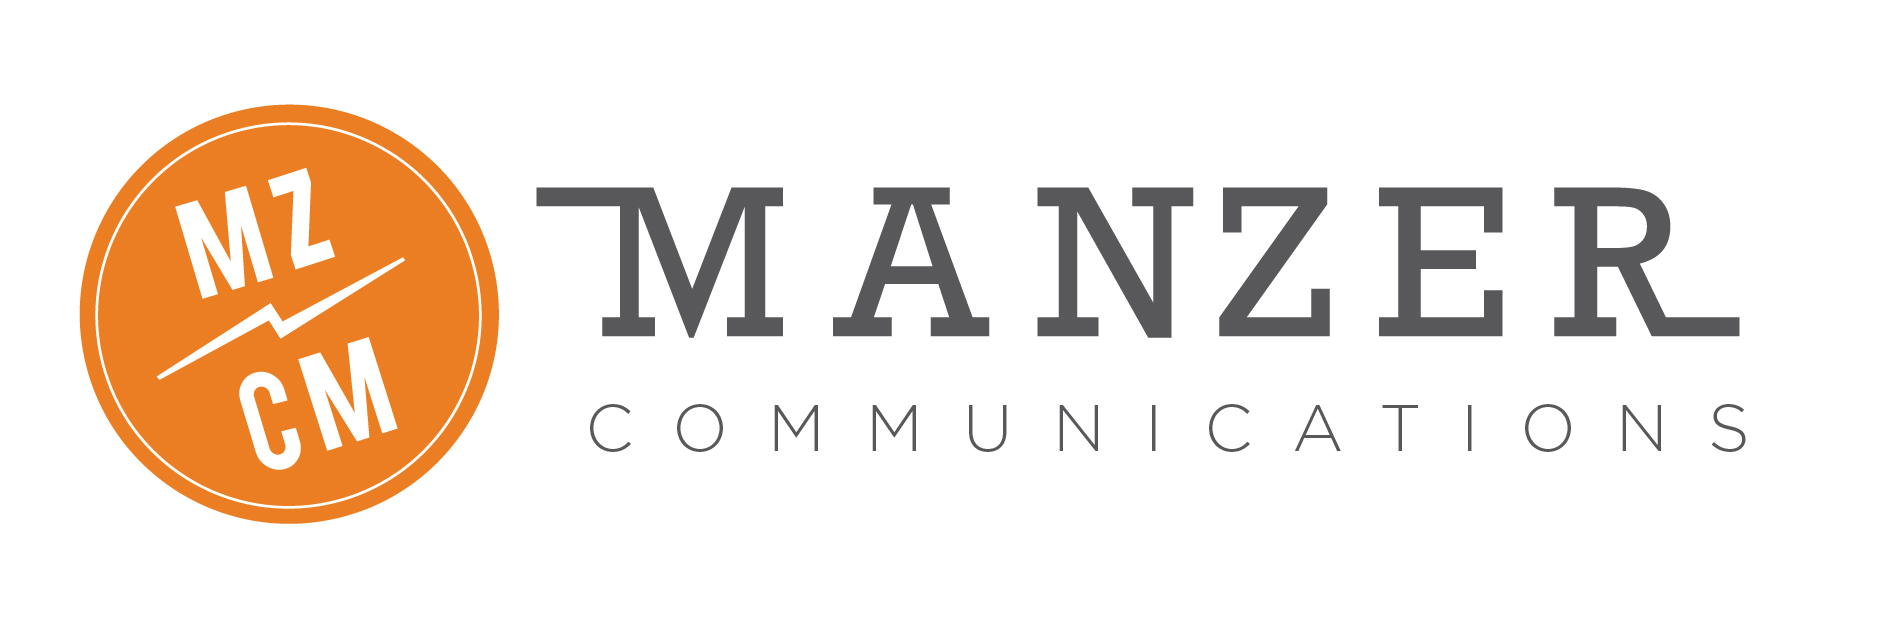 Manzer Communications